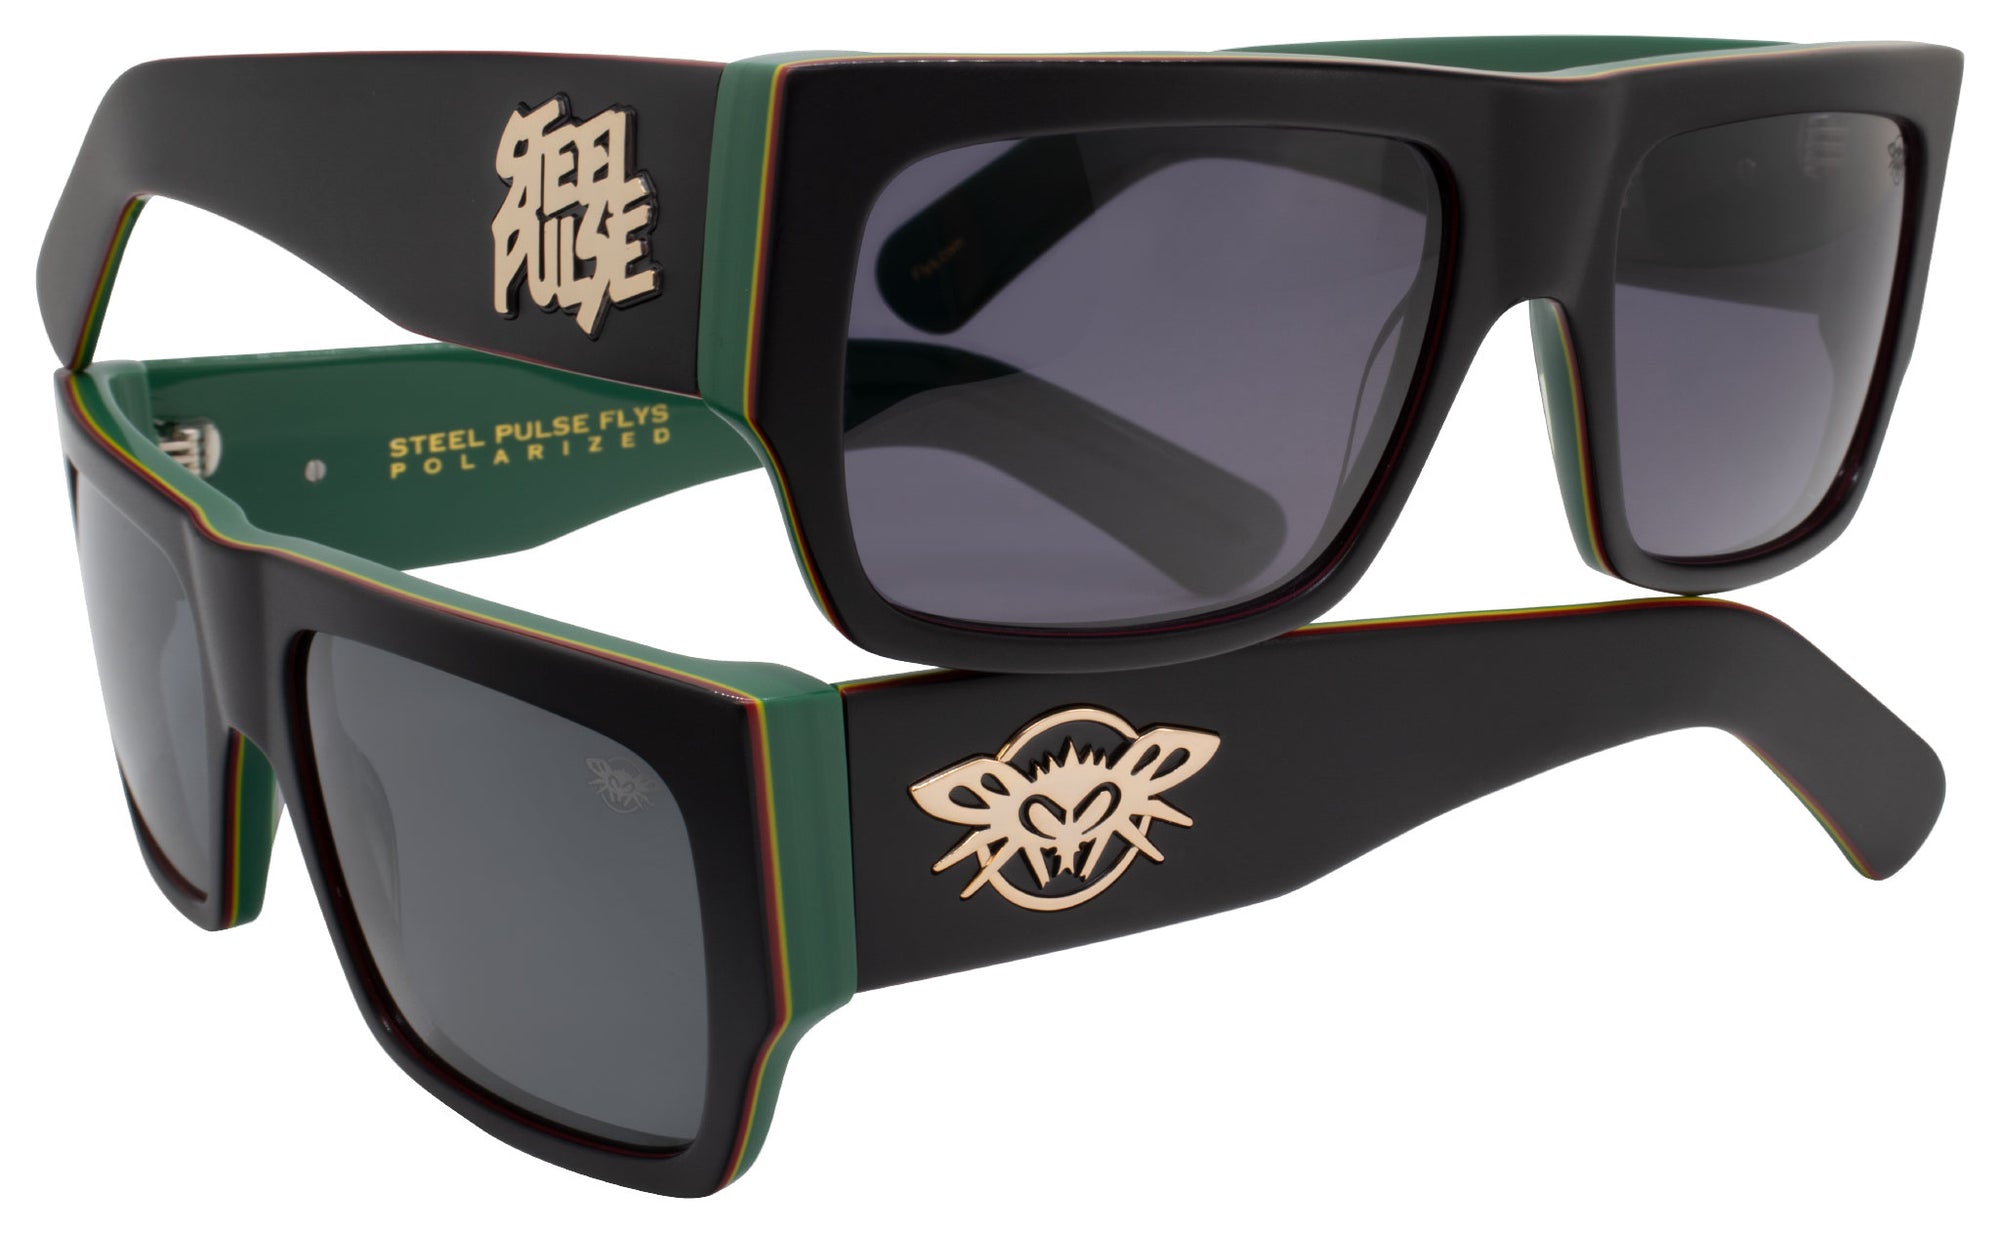 Steel Pulse Flys / Collab sunglasses